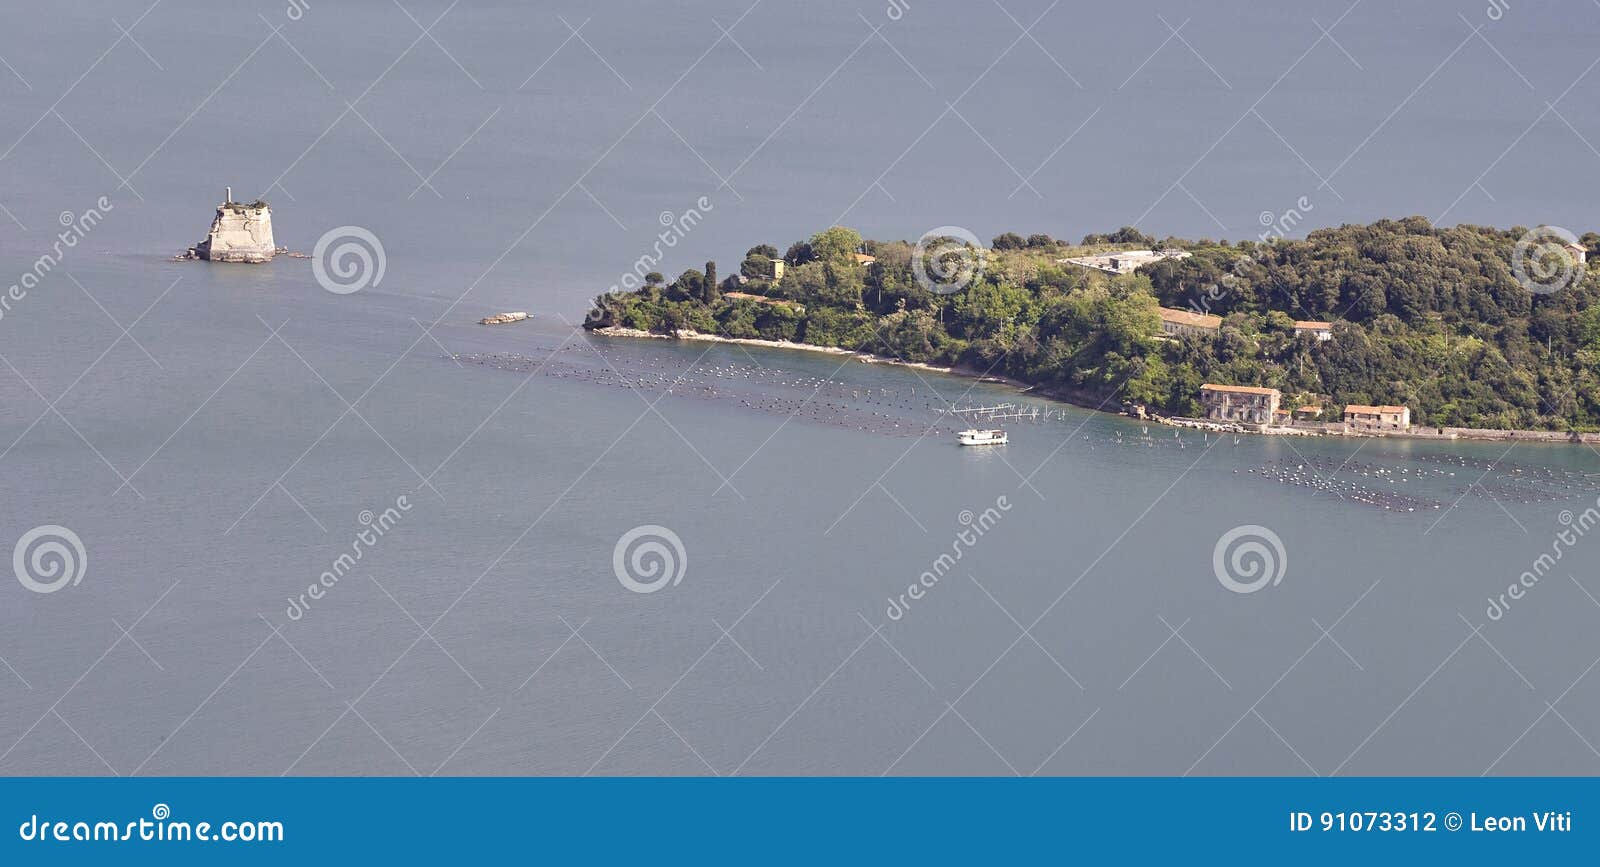 aerialview of palmaria island take from muzzerone mountain